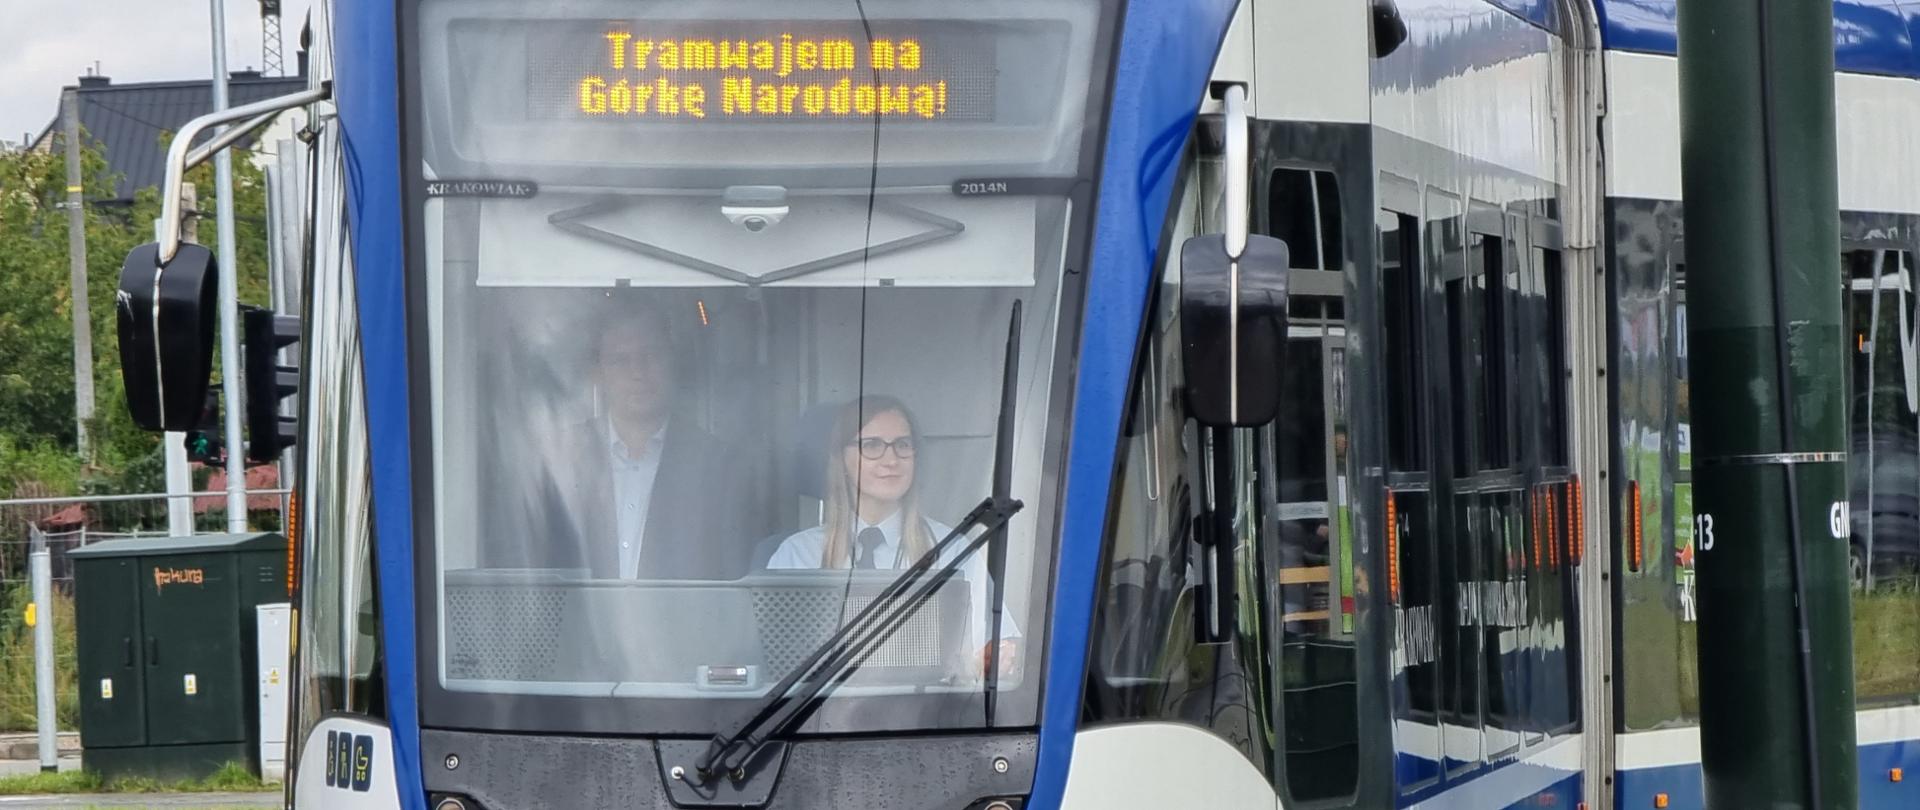 Pierwszy tramwaj wyjeżdża z Krowodrzy Górki na Górkę Narodową